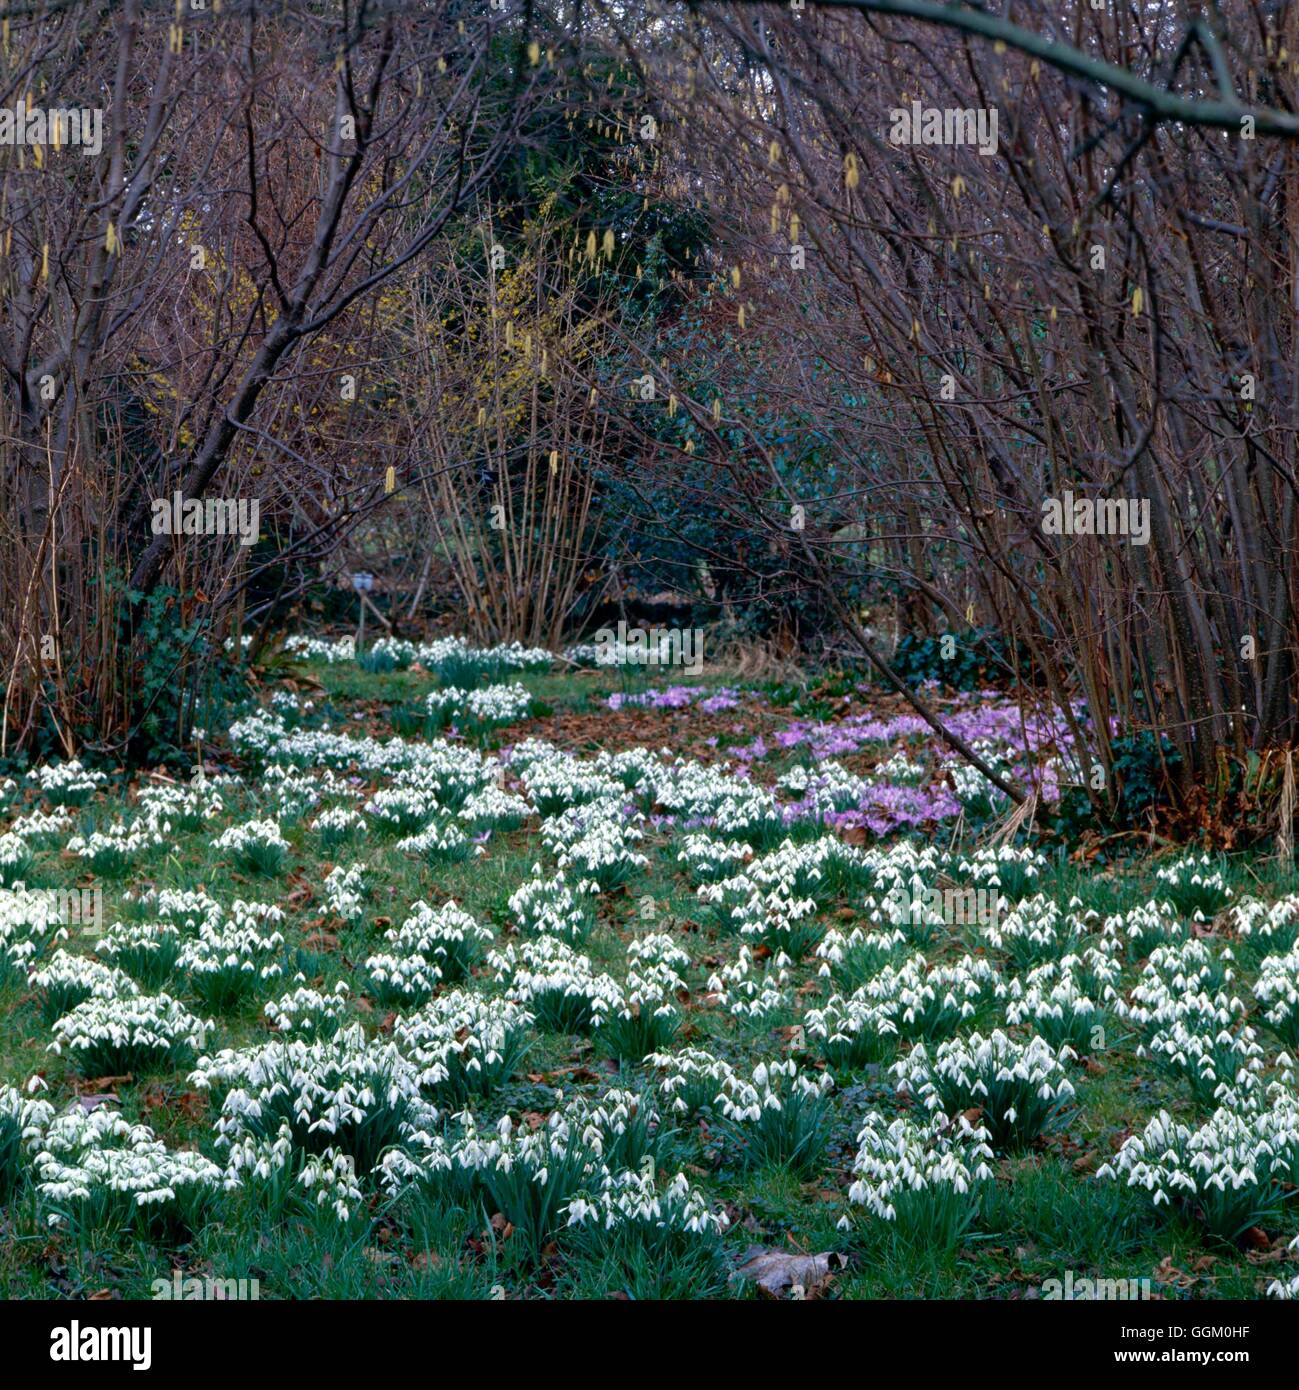 Bulbes naturalisés - Perce-neige (Galanthus) sous les arbustes noisette Photos Horticultura NAB000710 Banque D'Images